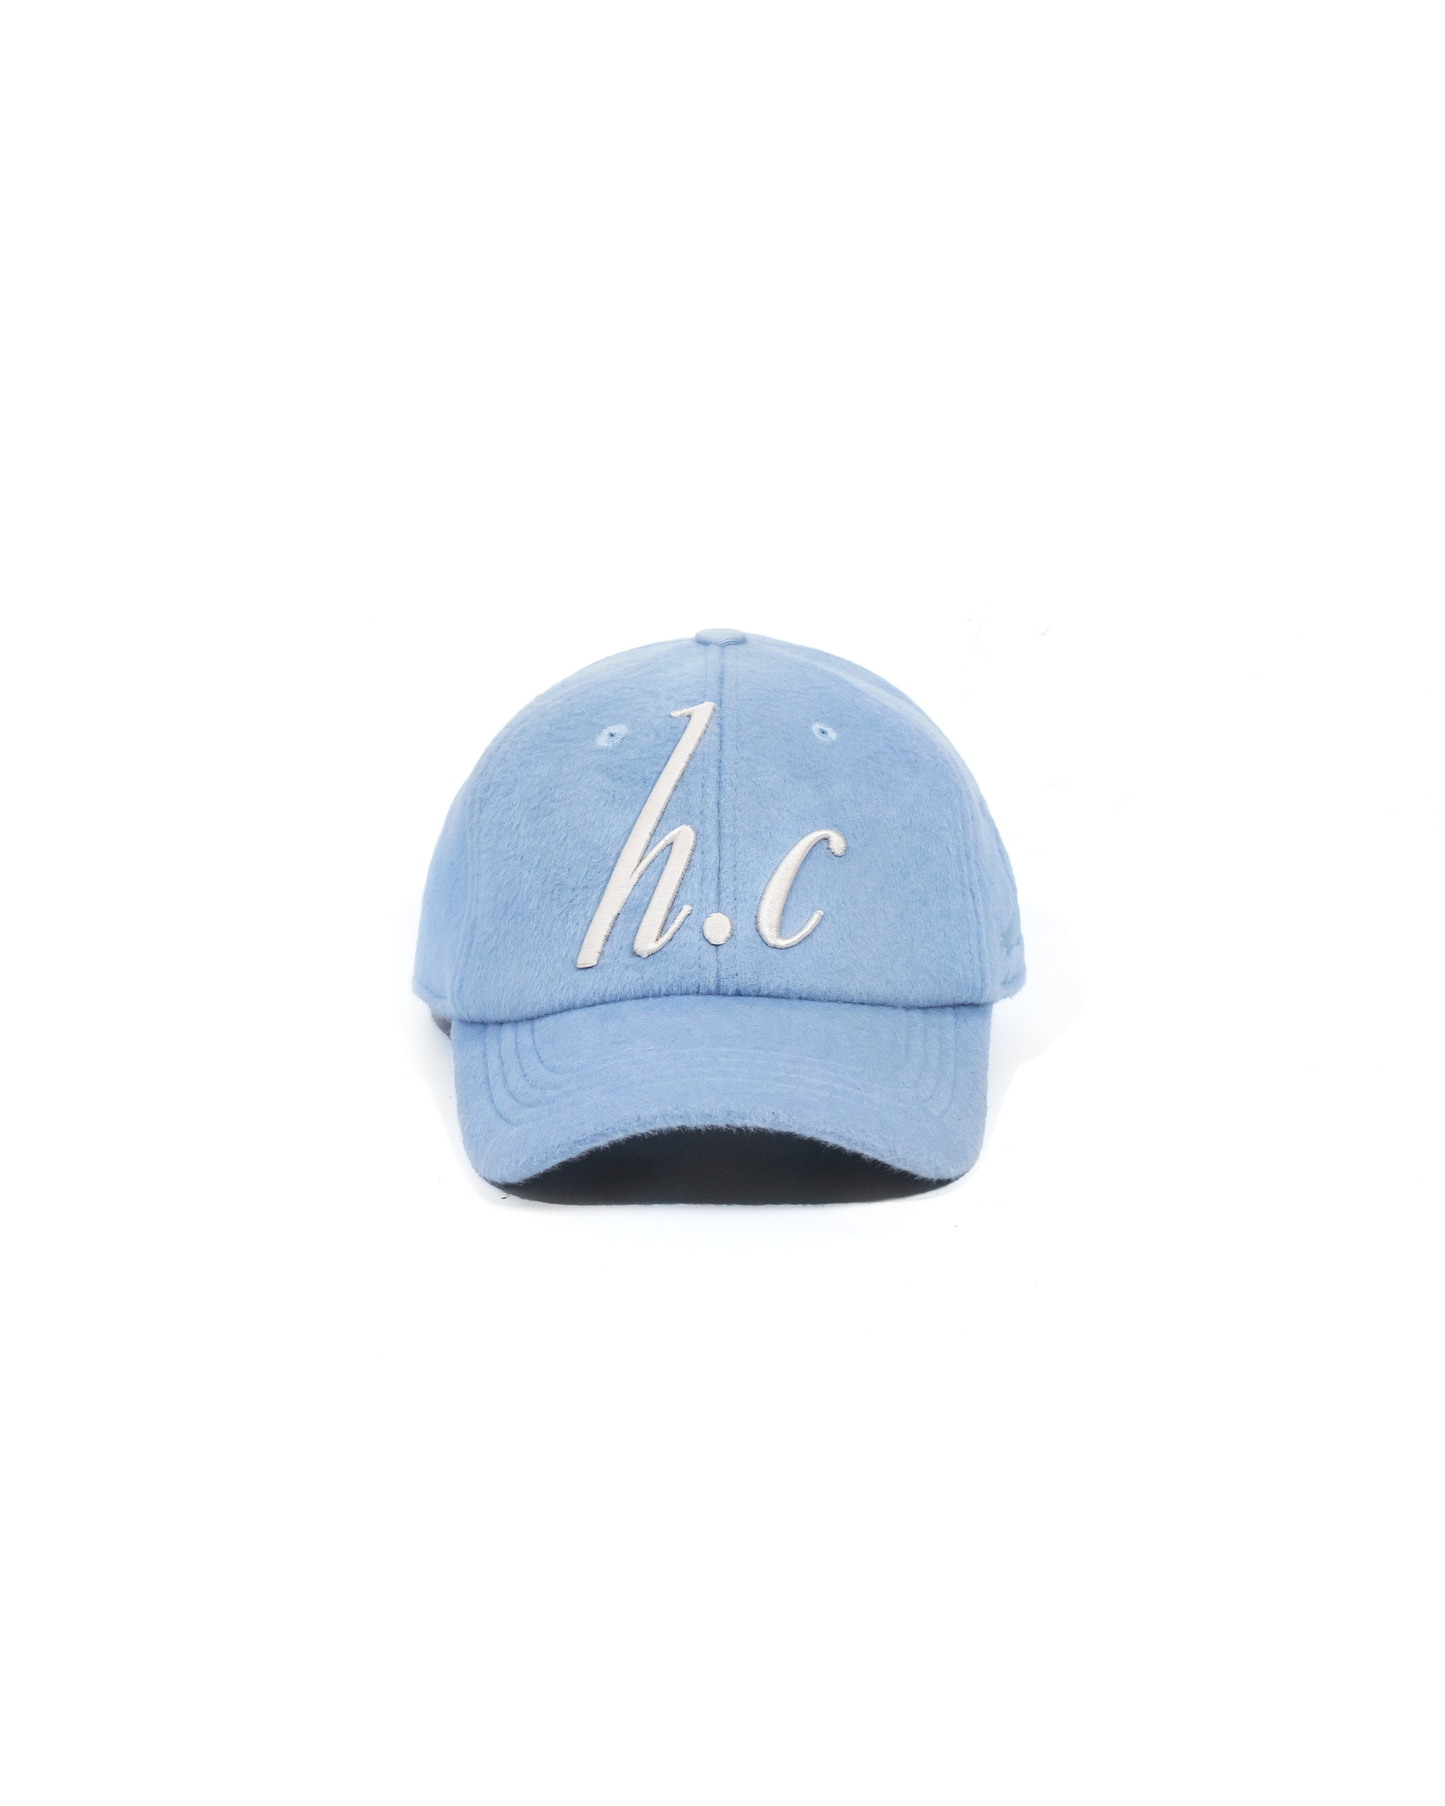 H.C HAT [BLUE]